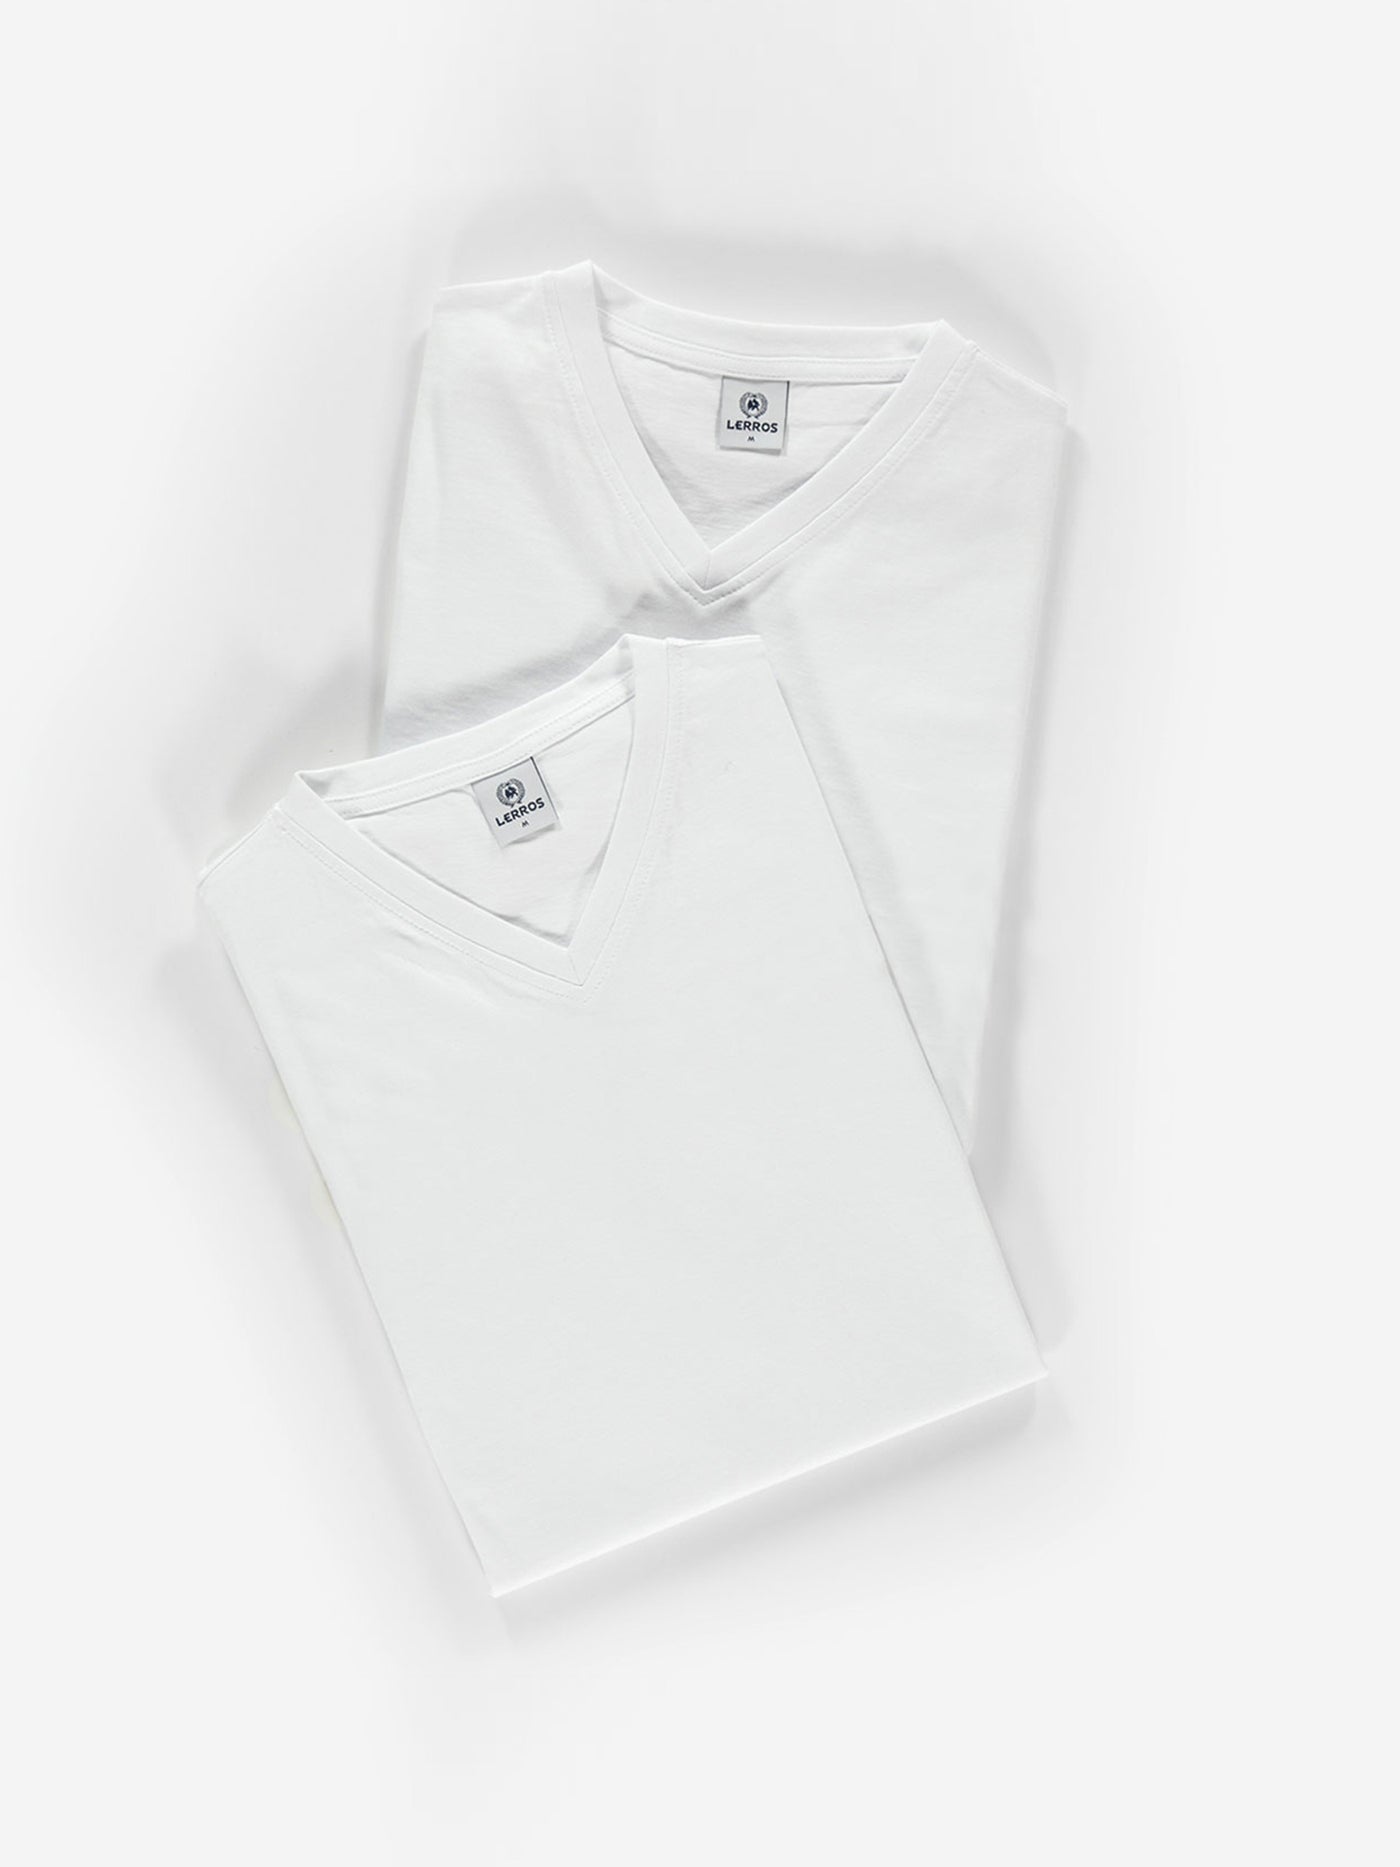 V-Neck Doppelpack Herren T-Shirt in Premium Baumwollqualität